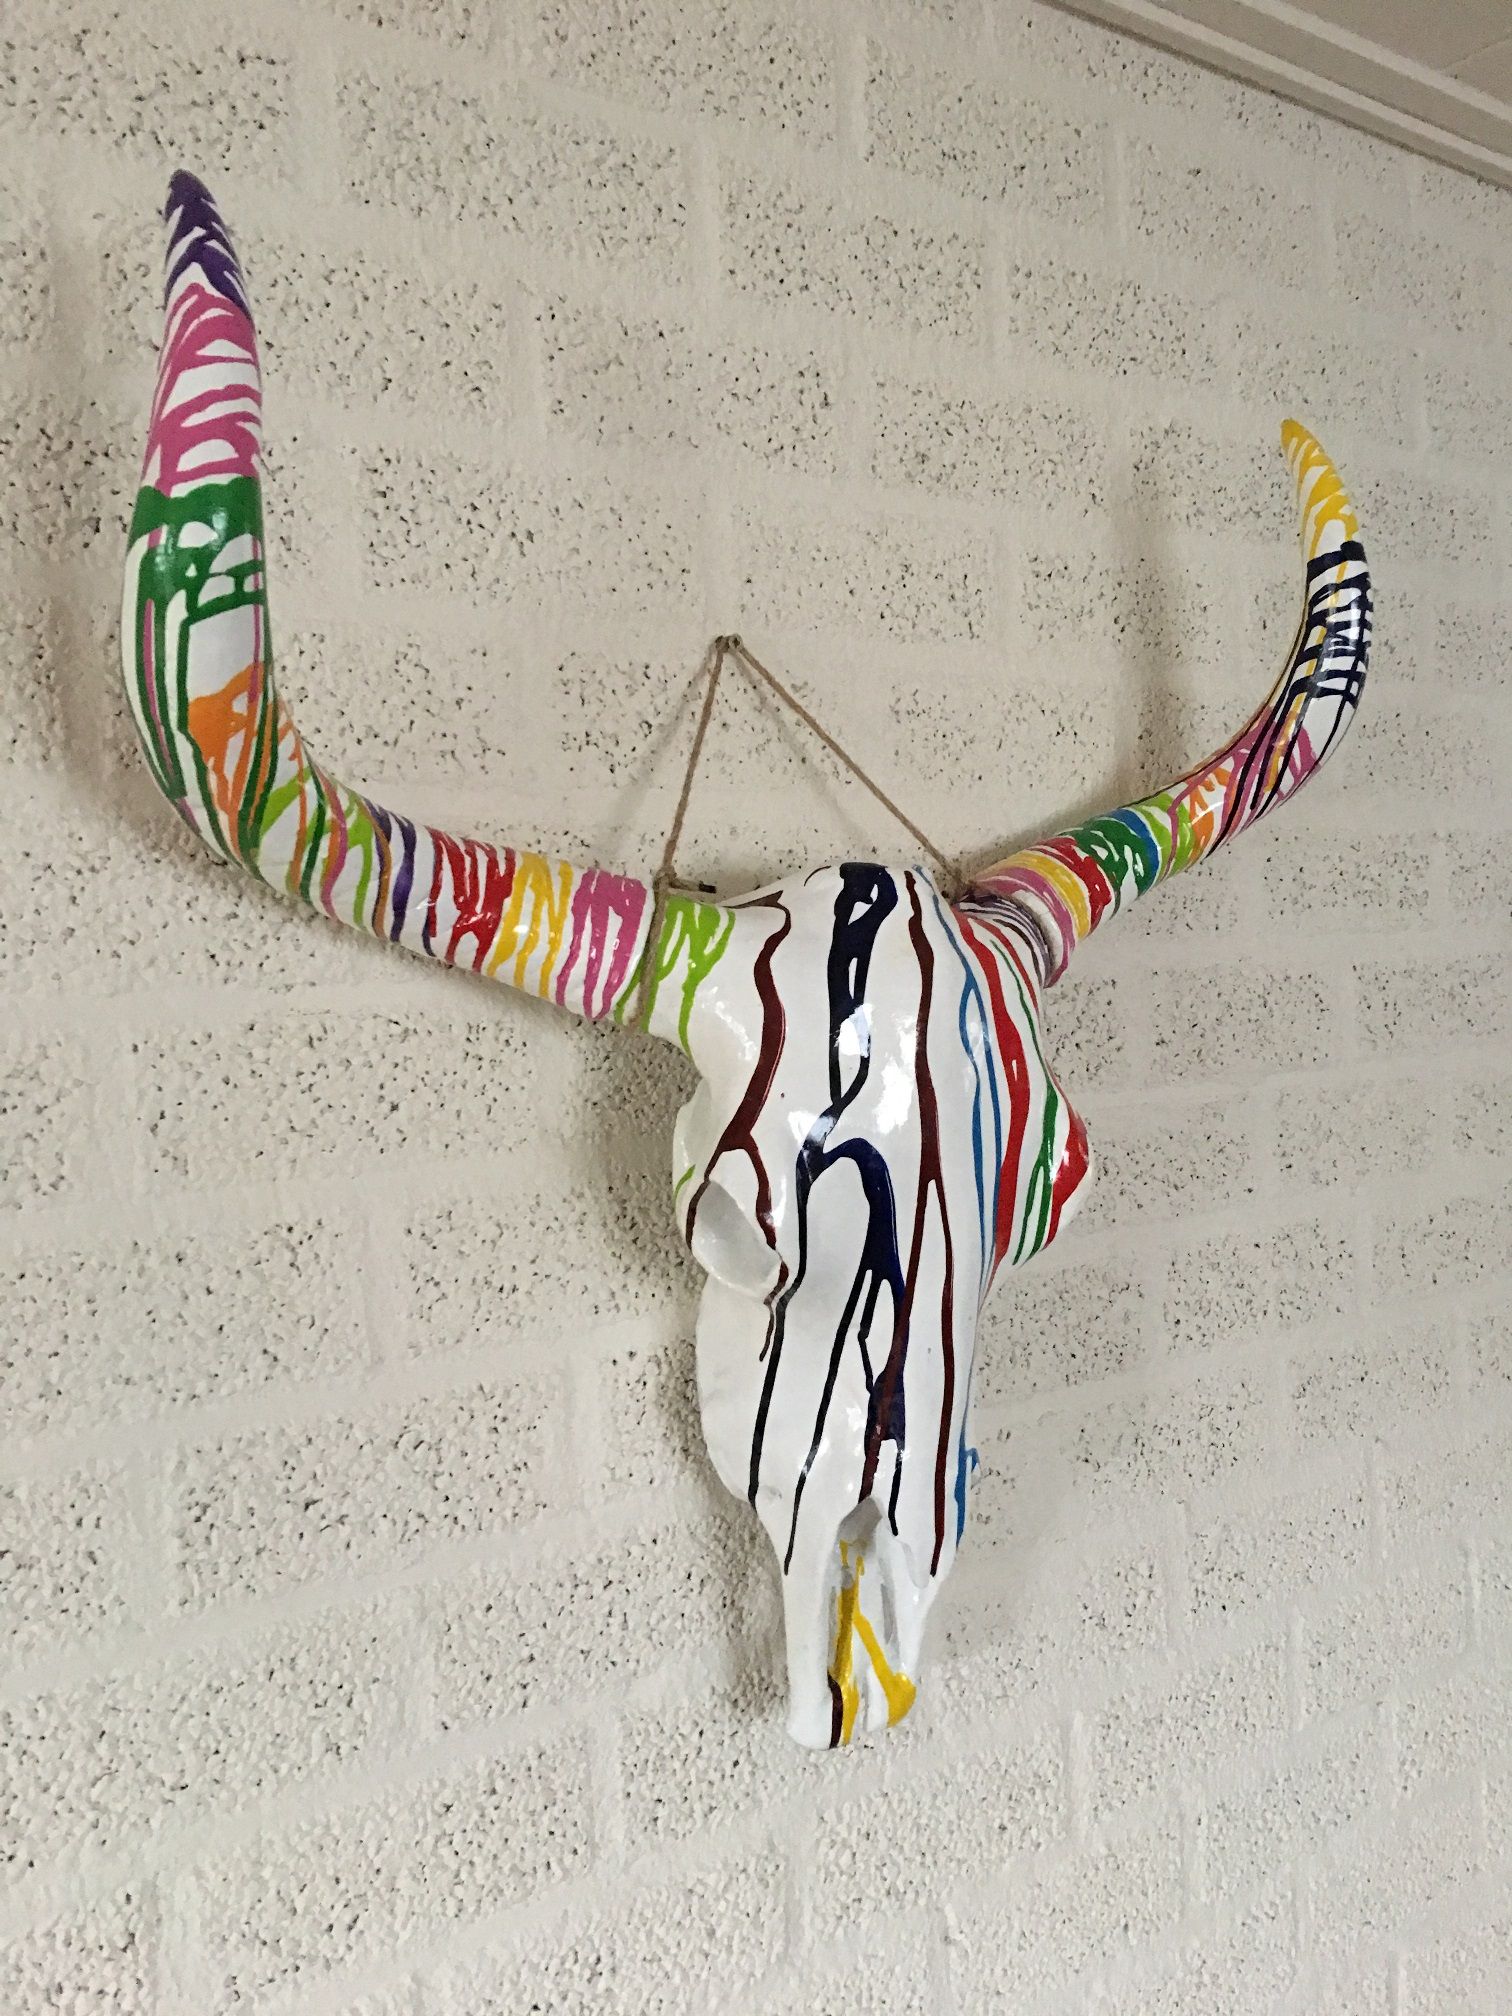 Stierschädel aus Polystone mit Hörnern und viel Farbe